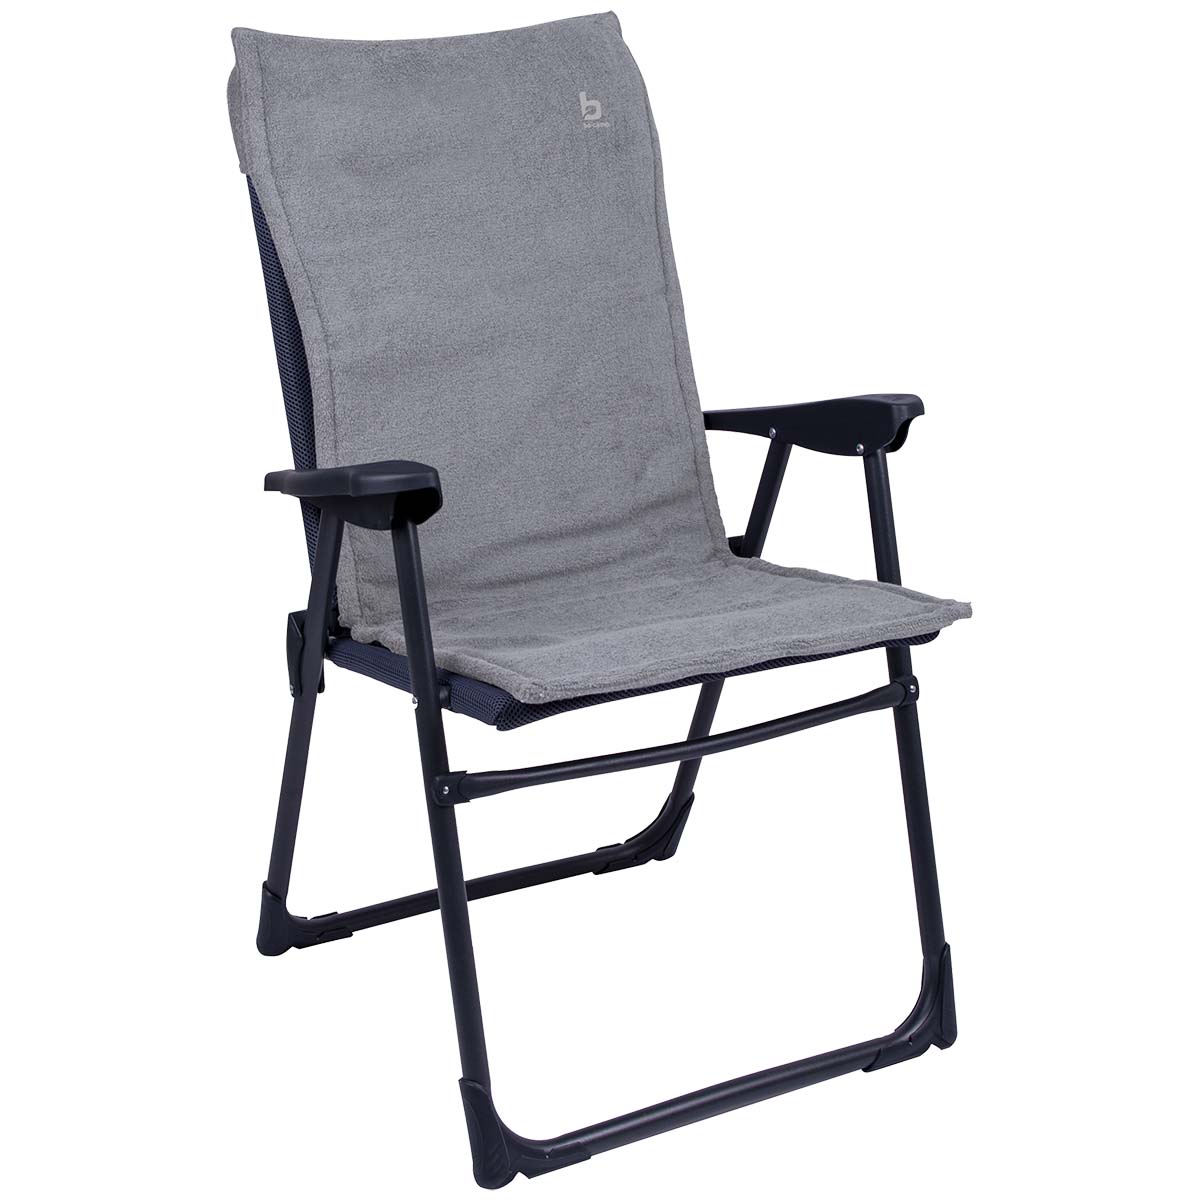 1849267 Een extra zachte stoelhoes voor compacte (kampeer)stoelen. Deze universele stoelhoes zorgt voor optimaal zitcomfort en biedt bescherming aan de stoel (bijvoorbeeld de Copa Rio). Extra comfortabel door het gepolsterde badstof.